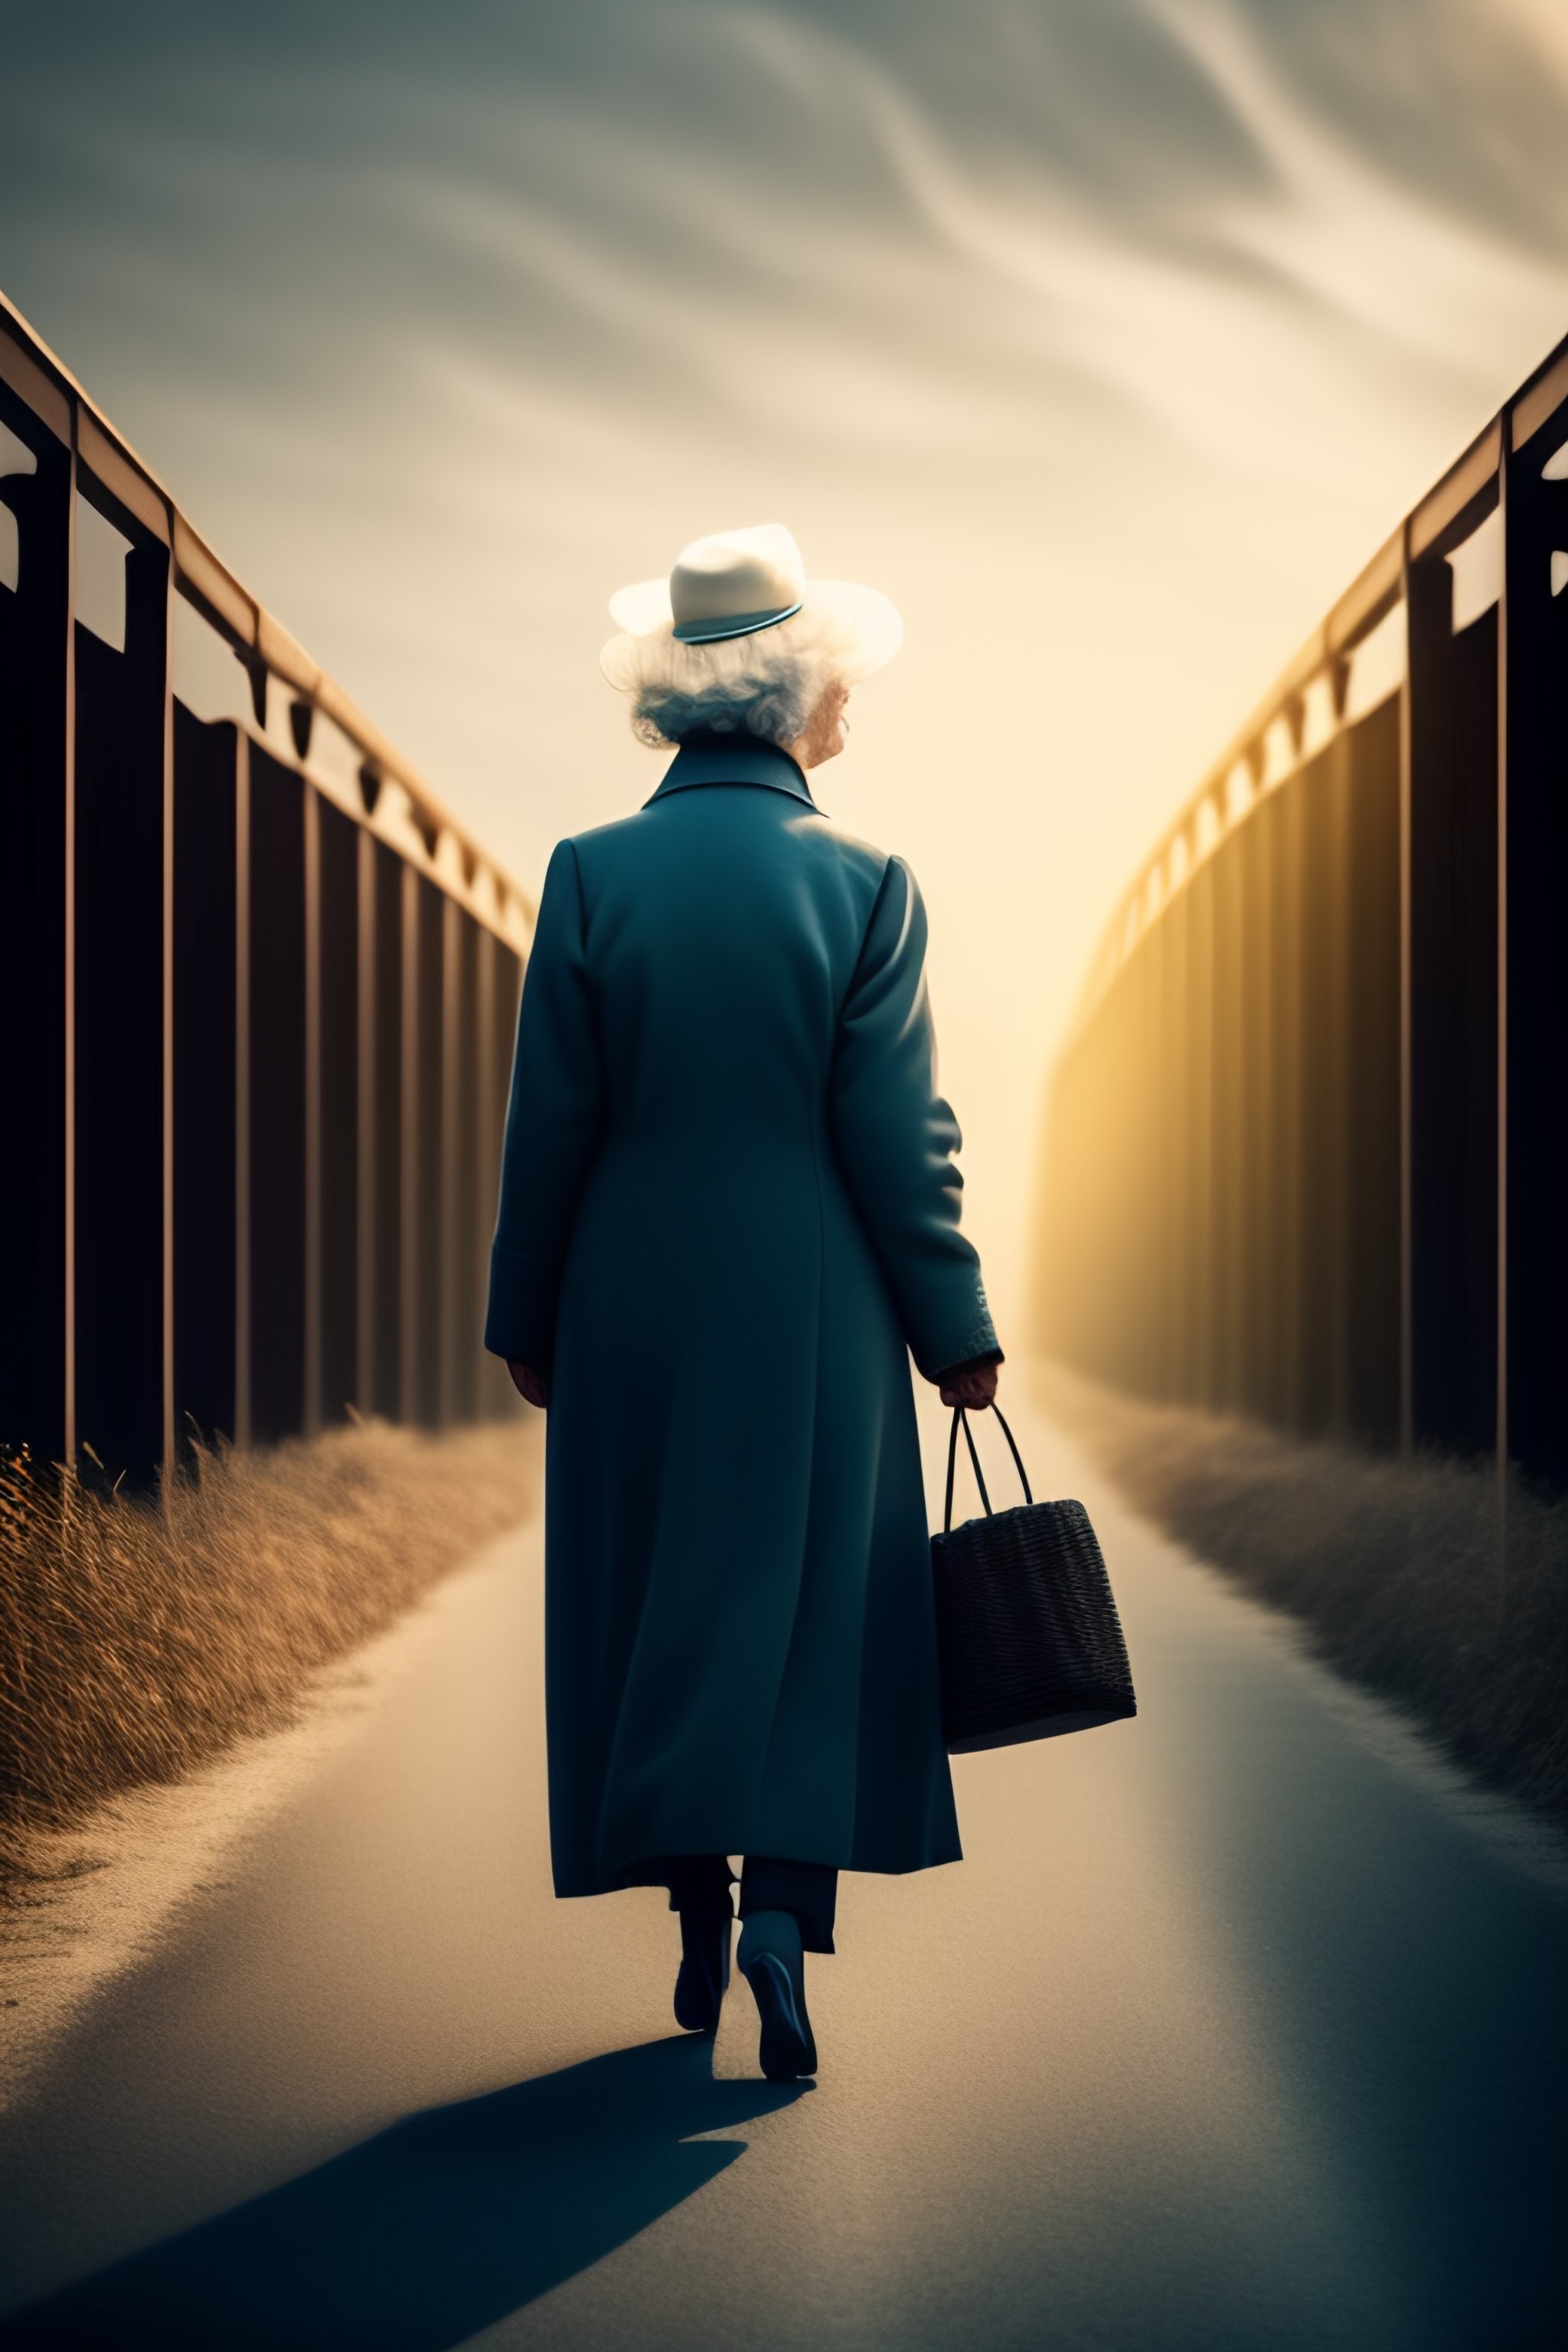 old woman walking away